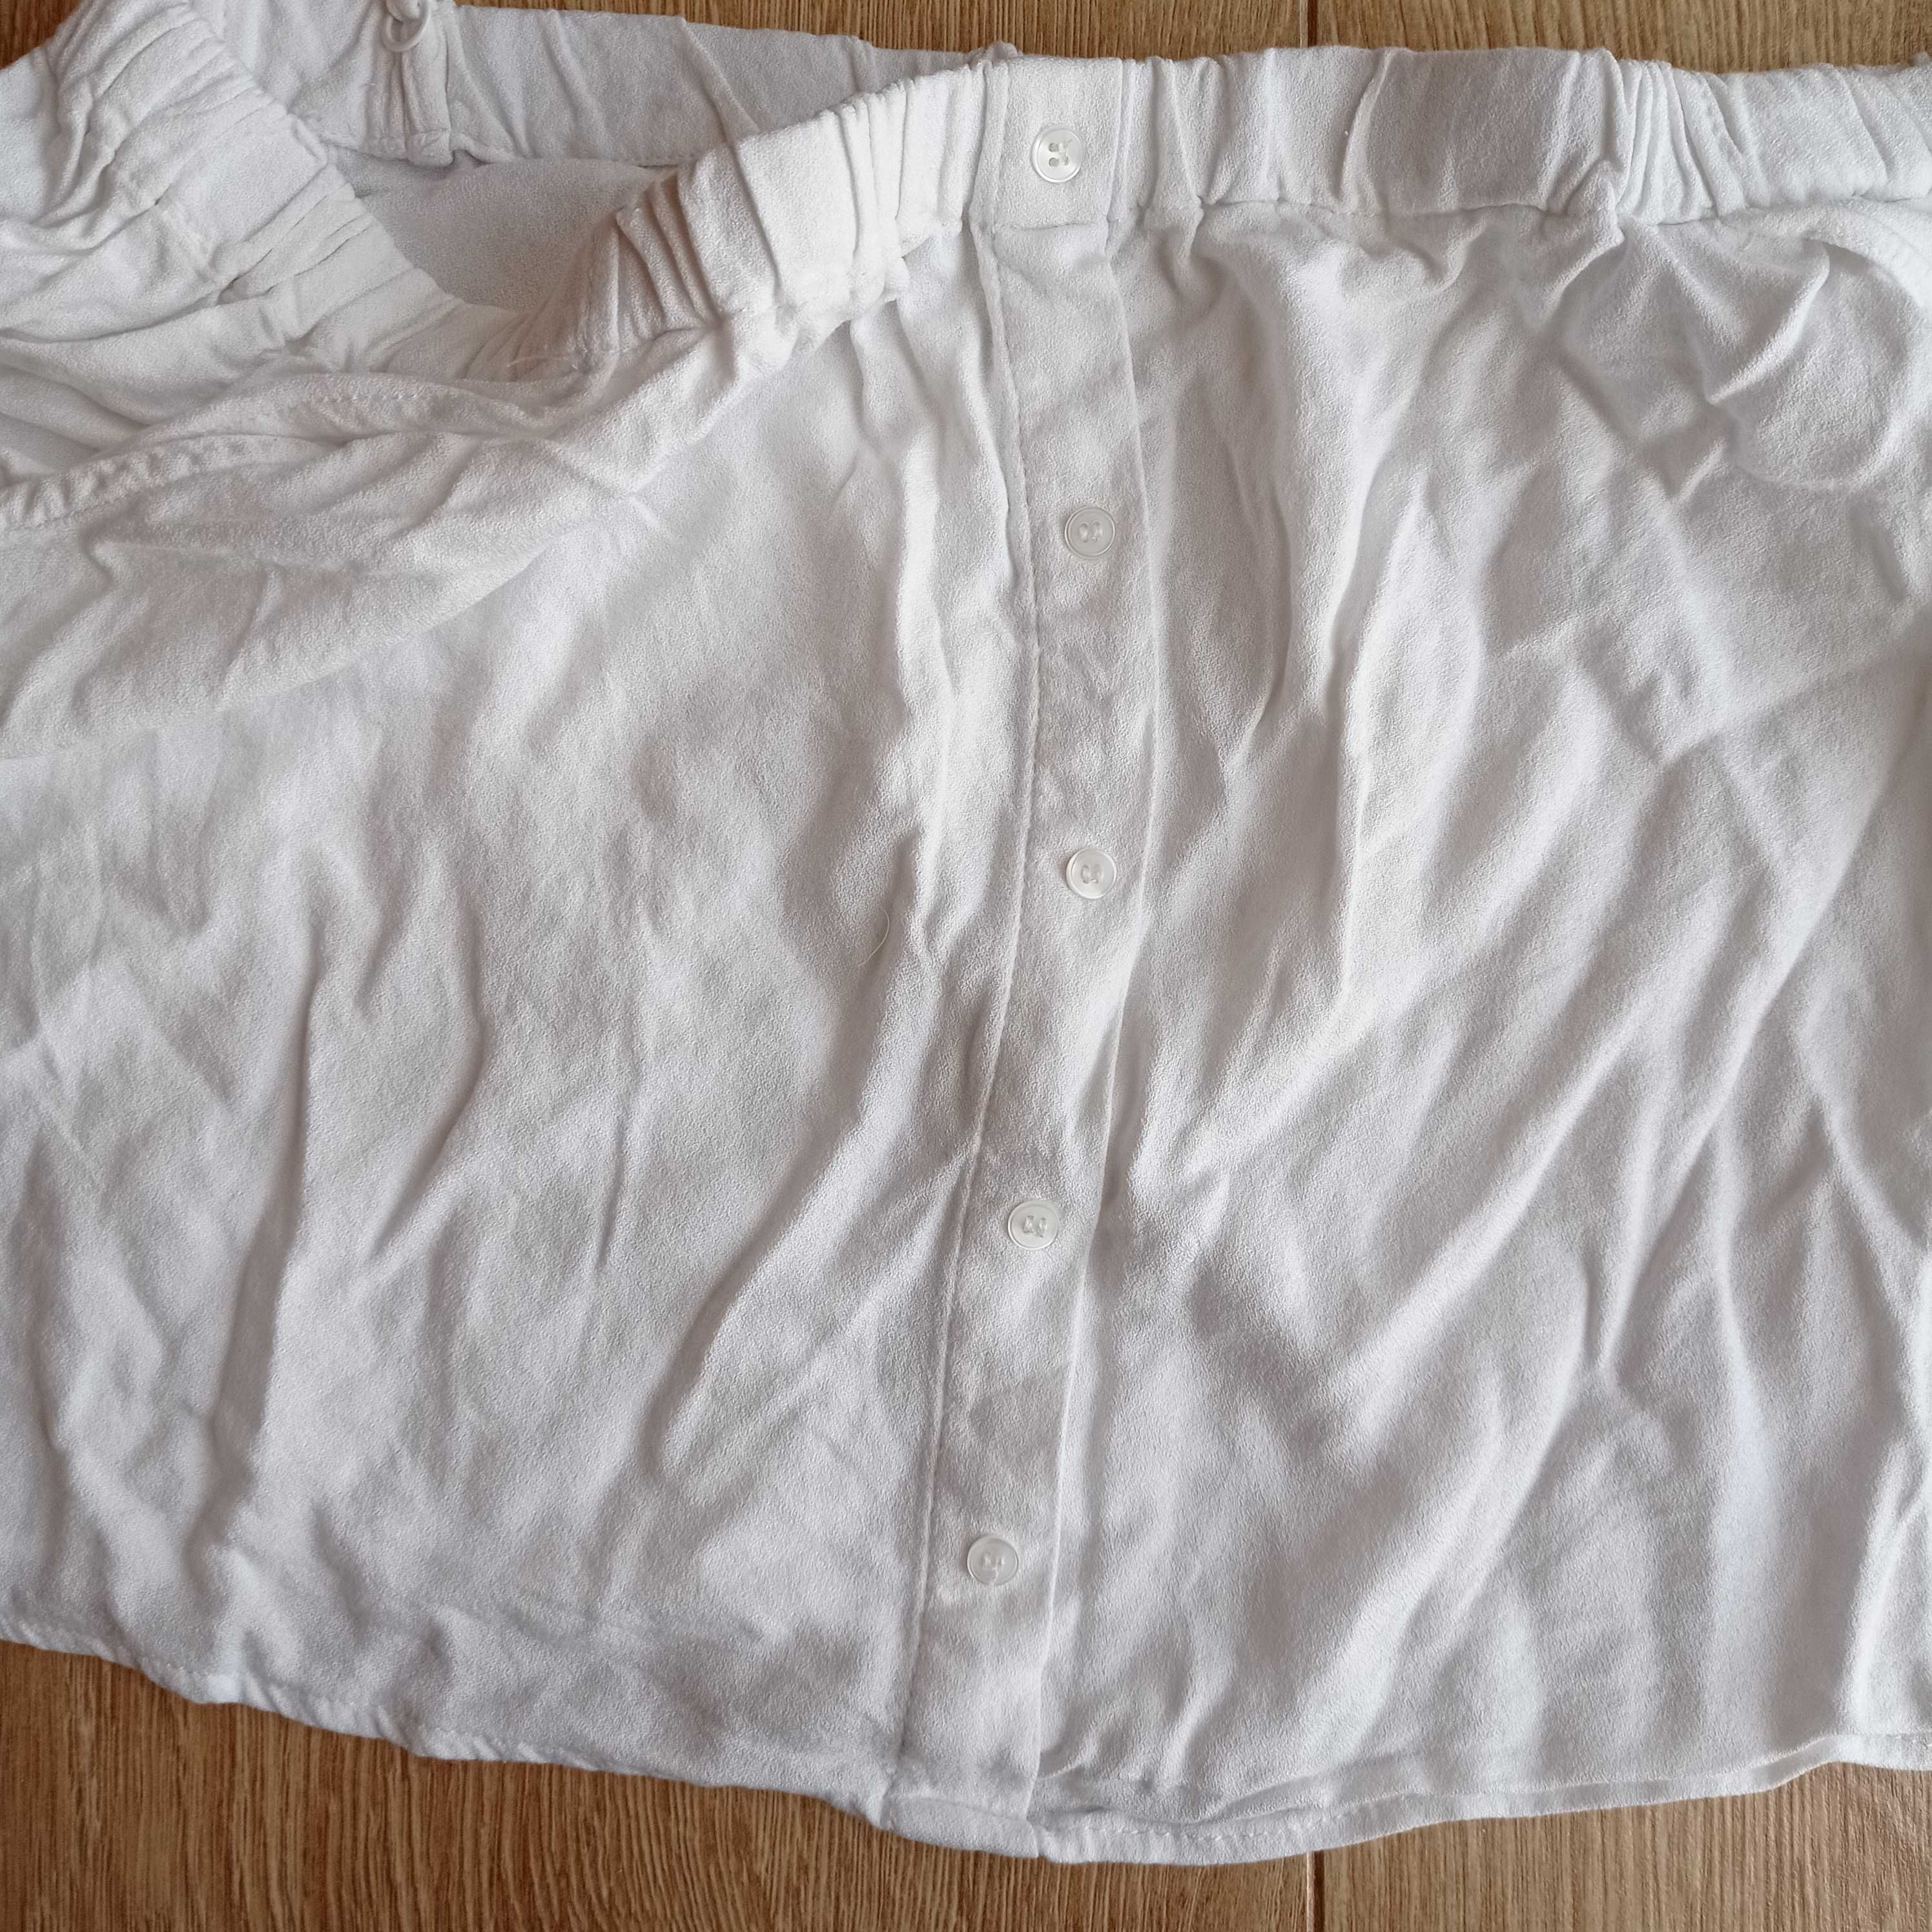 Pull&Bear biała rozkloszowana bluzka krótki crop top hiszpanka rozm S